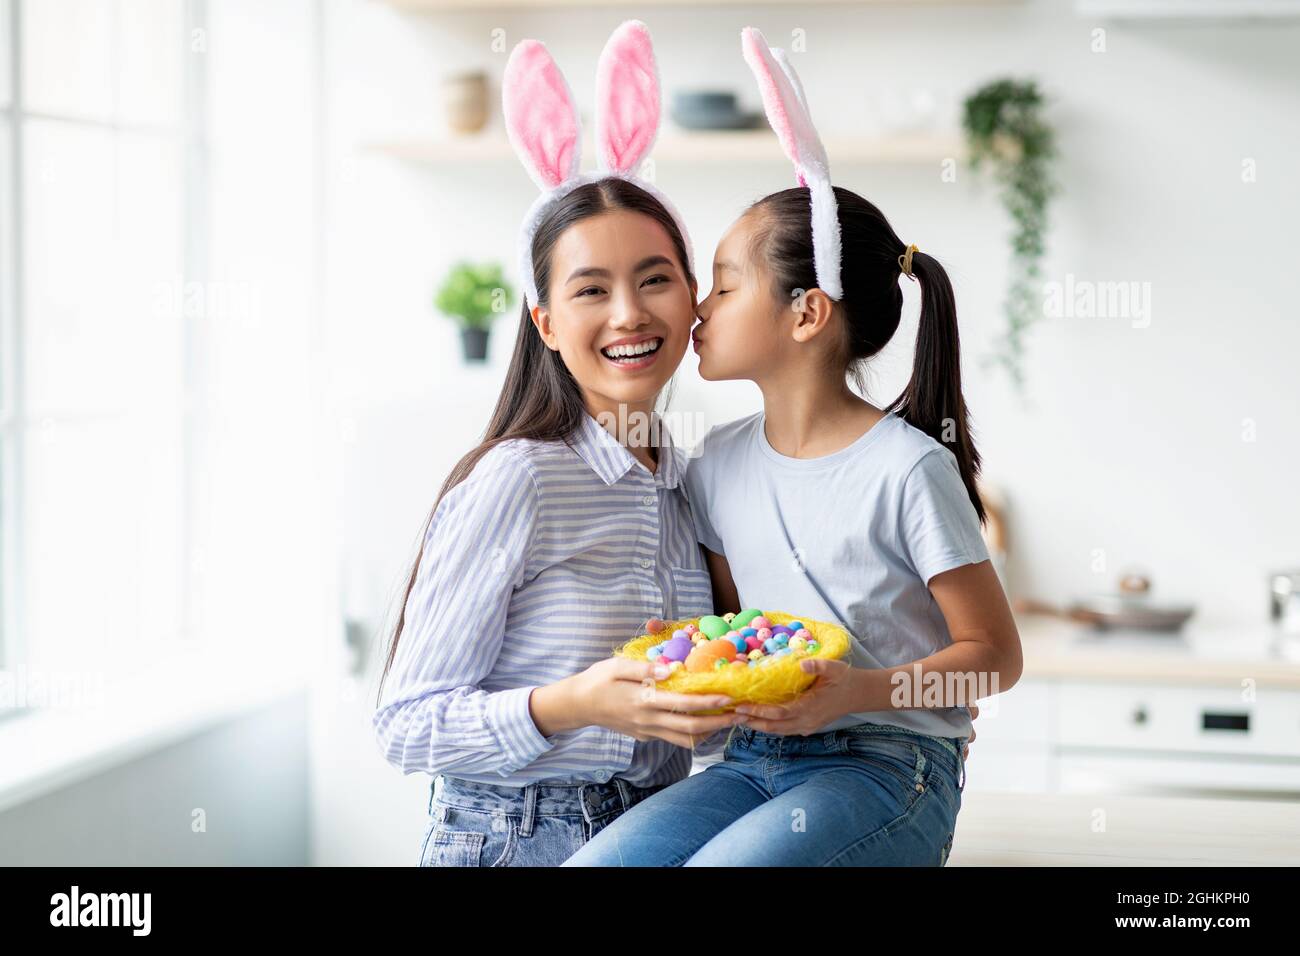 Feiertags- und Feiertagskonzept. Nettes asiatisches Mädchen und eine Frau, die am Ostertag Hasenohren trägt, kopieren Sie den Raum Stockfoto